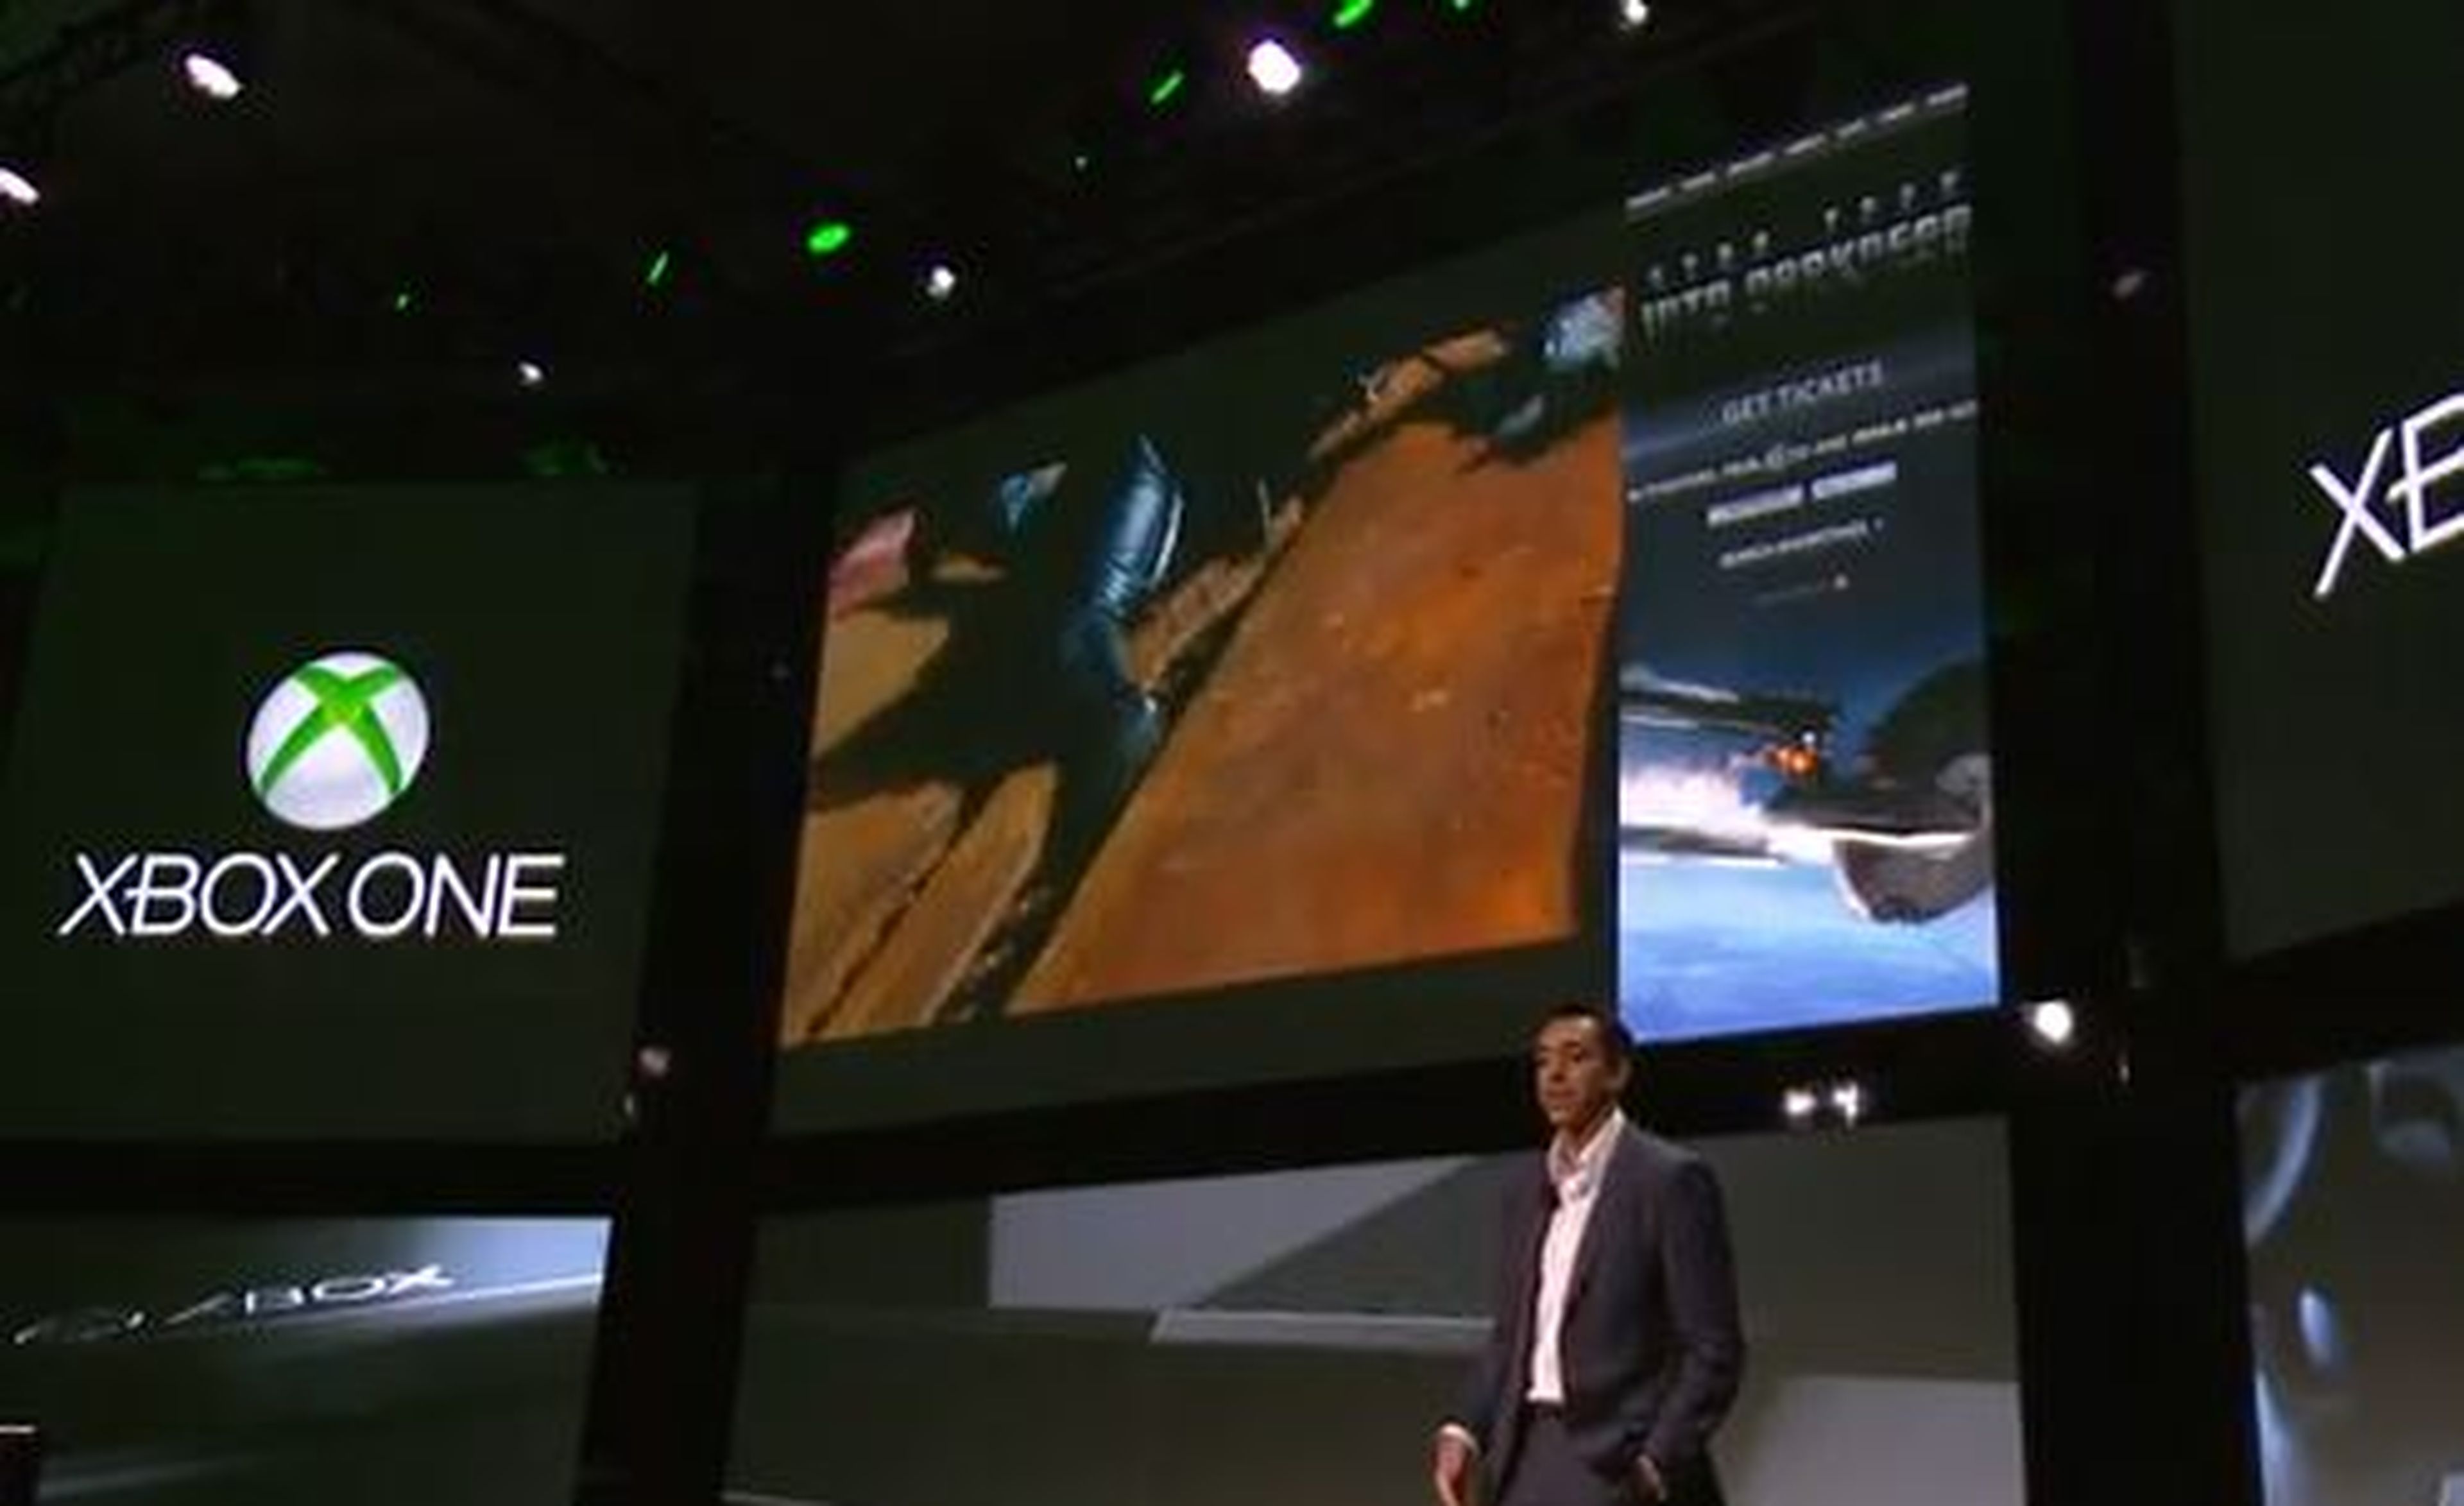 Especificaciones de Xbox One: así es la nueva consola